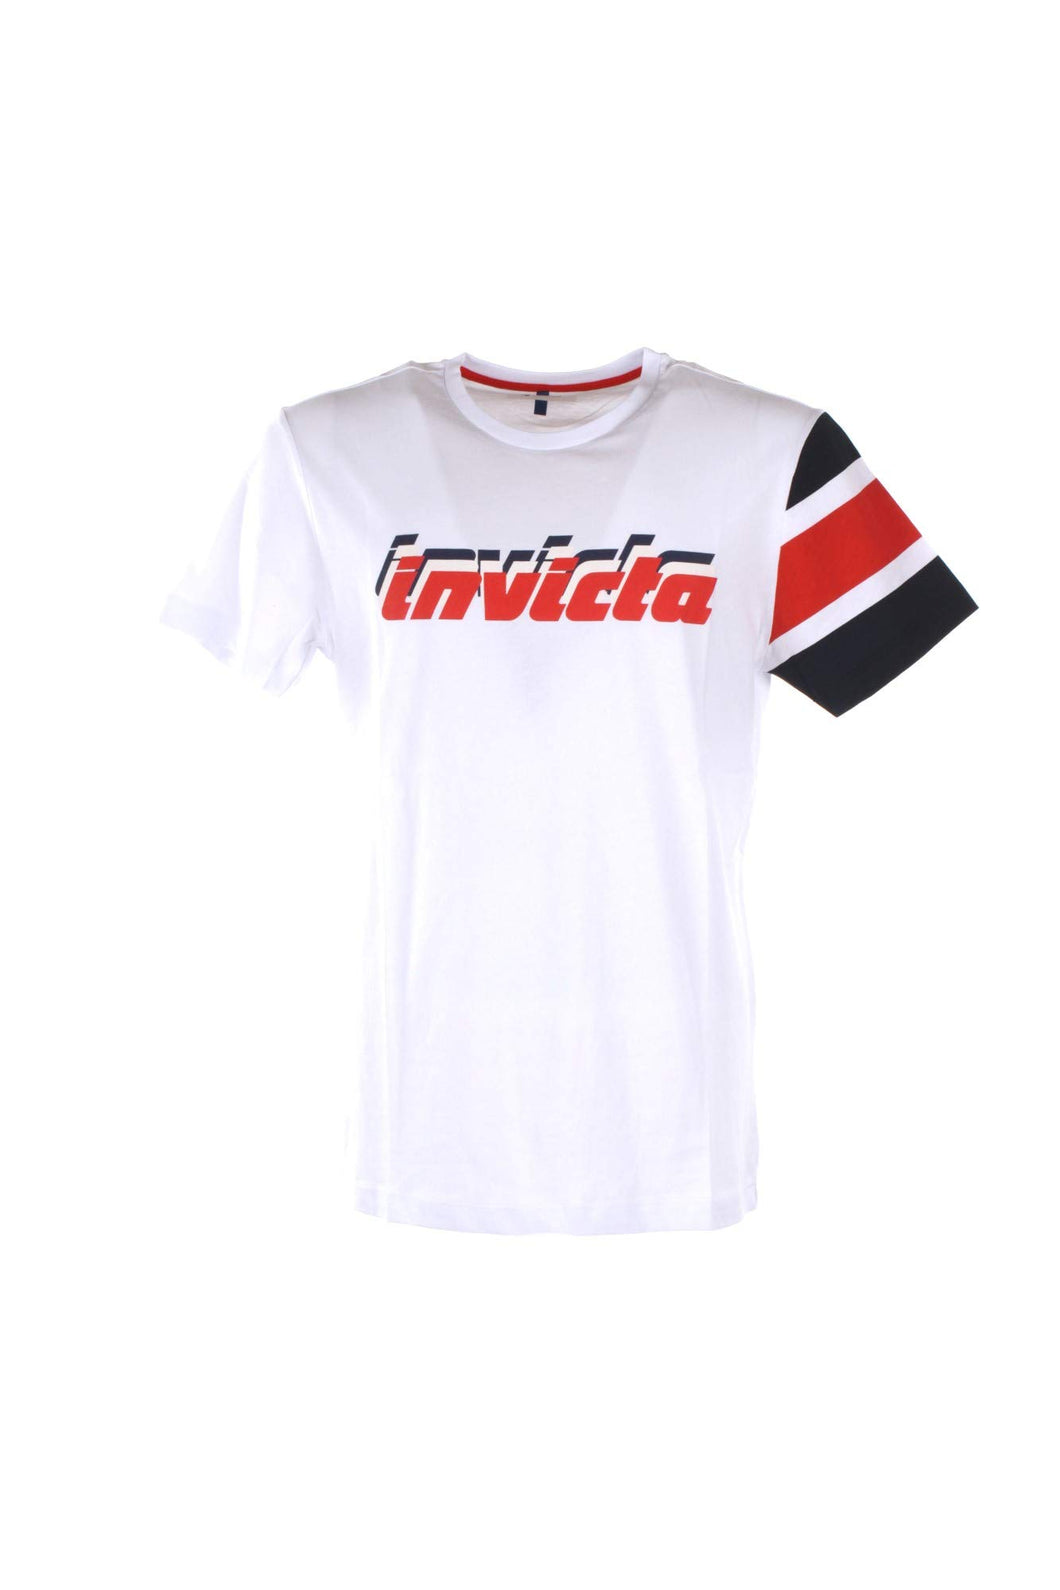 invicta T-Shirt Bianca in Cotone con Stampa Logo - XL